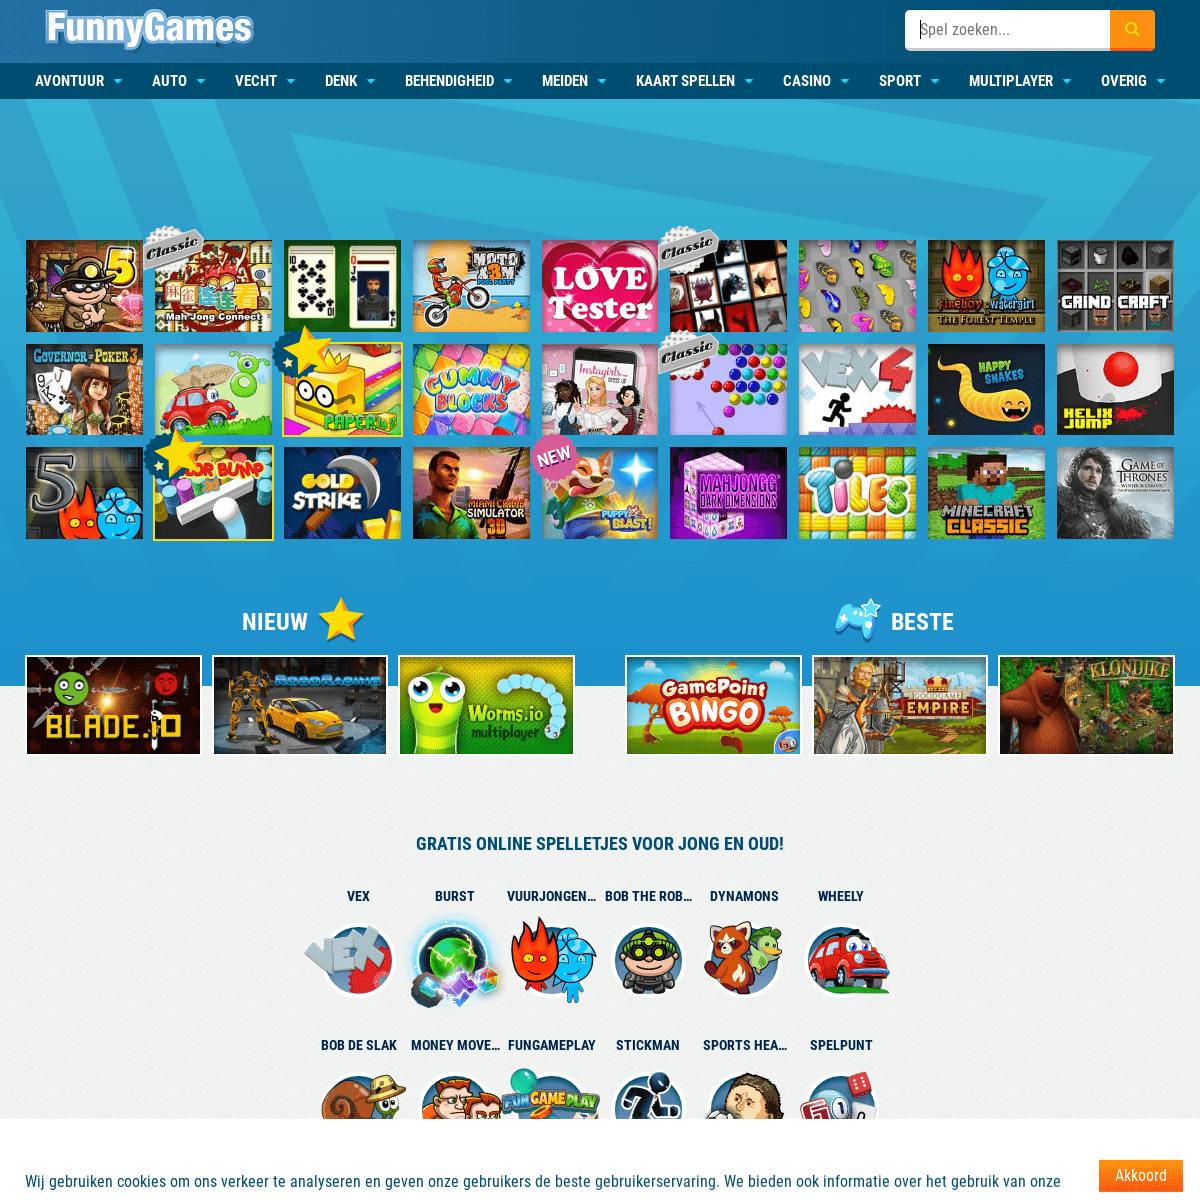 Online Spelletjes Voor Iedereen - Speel Gratis | FunnyGames